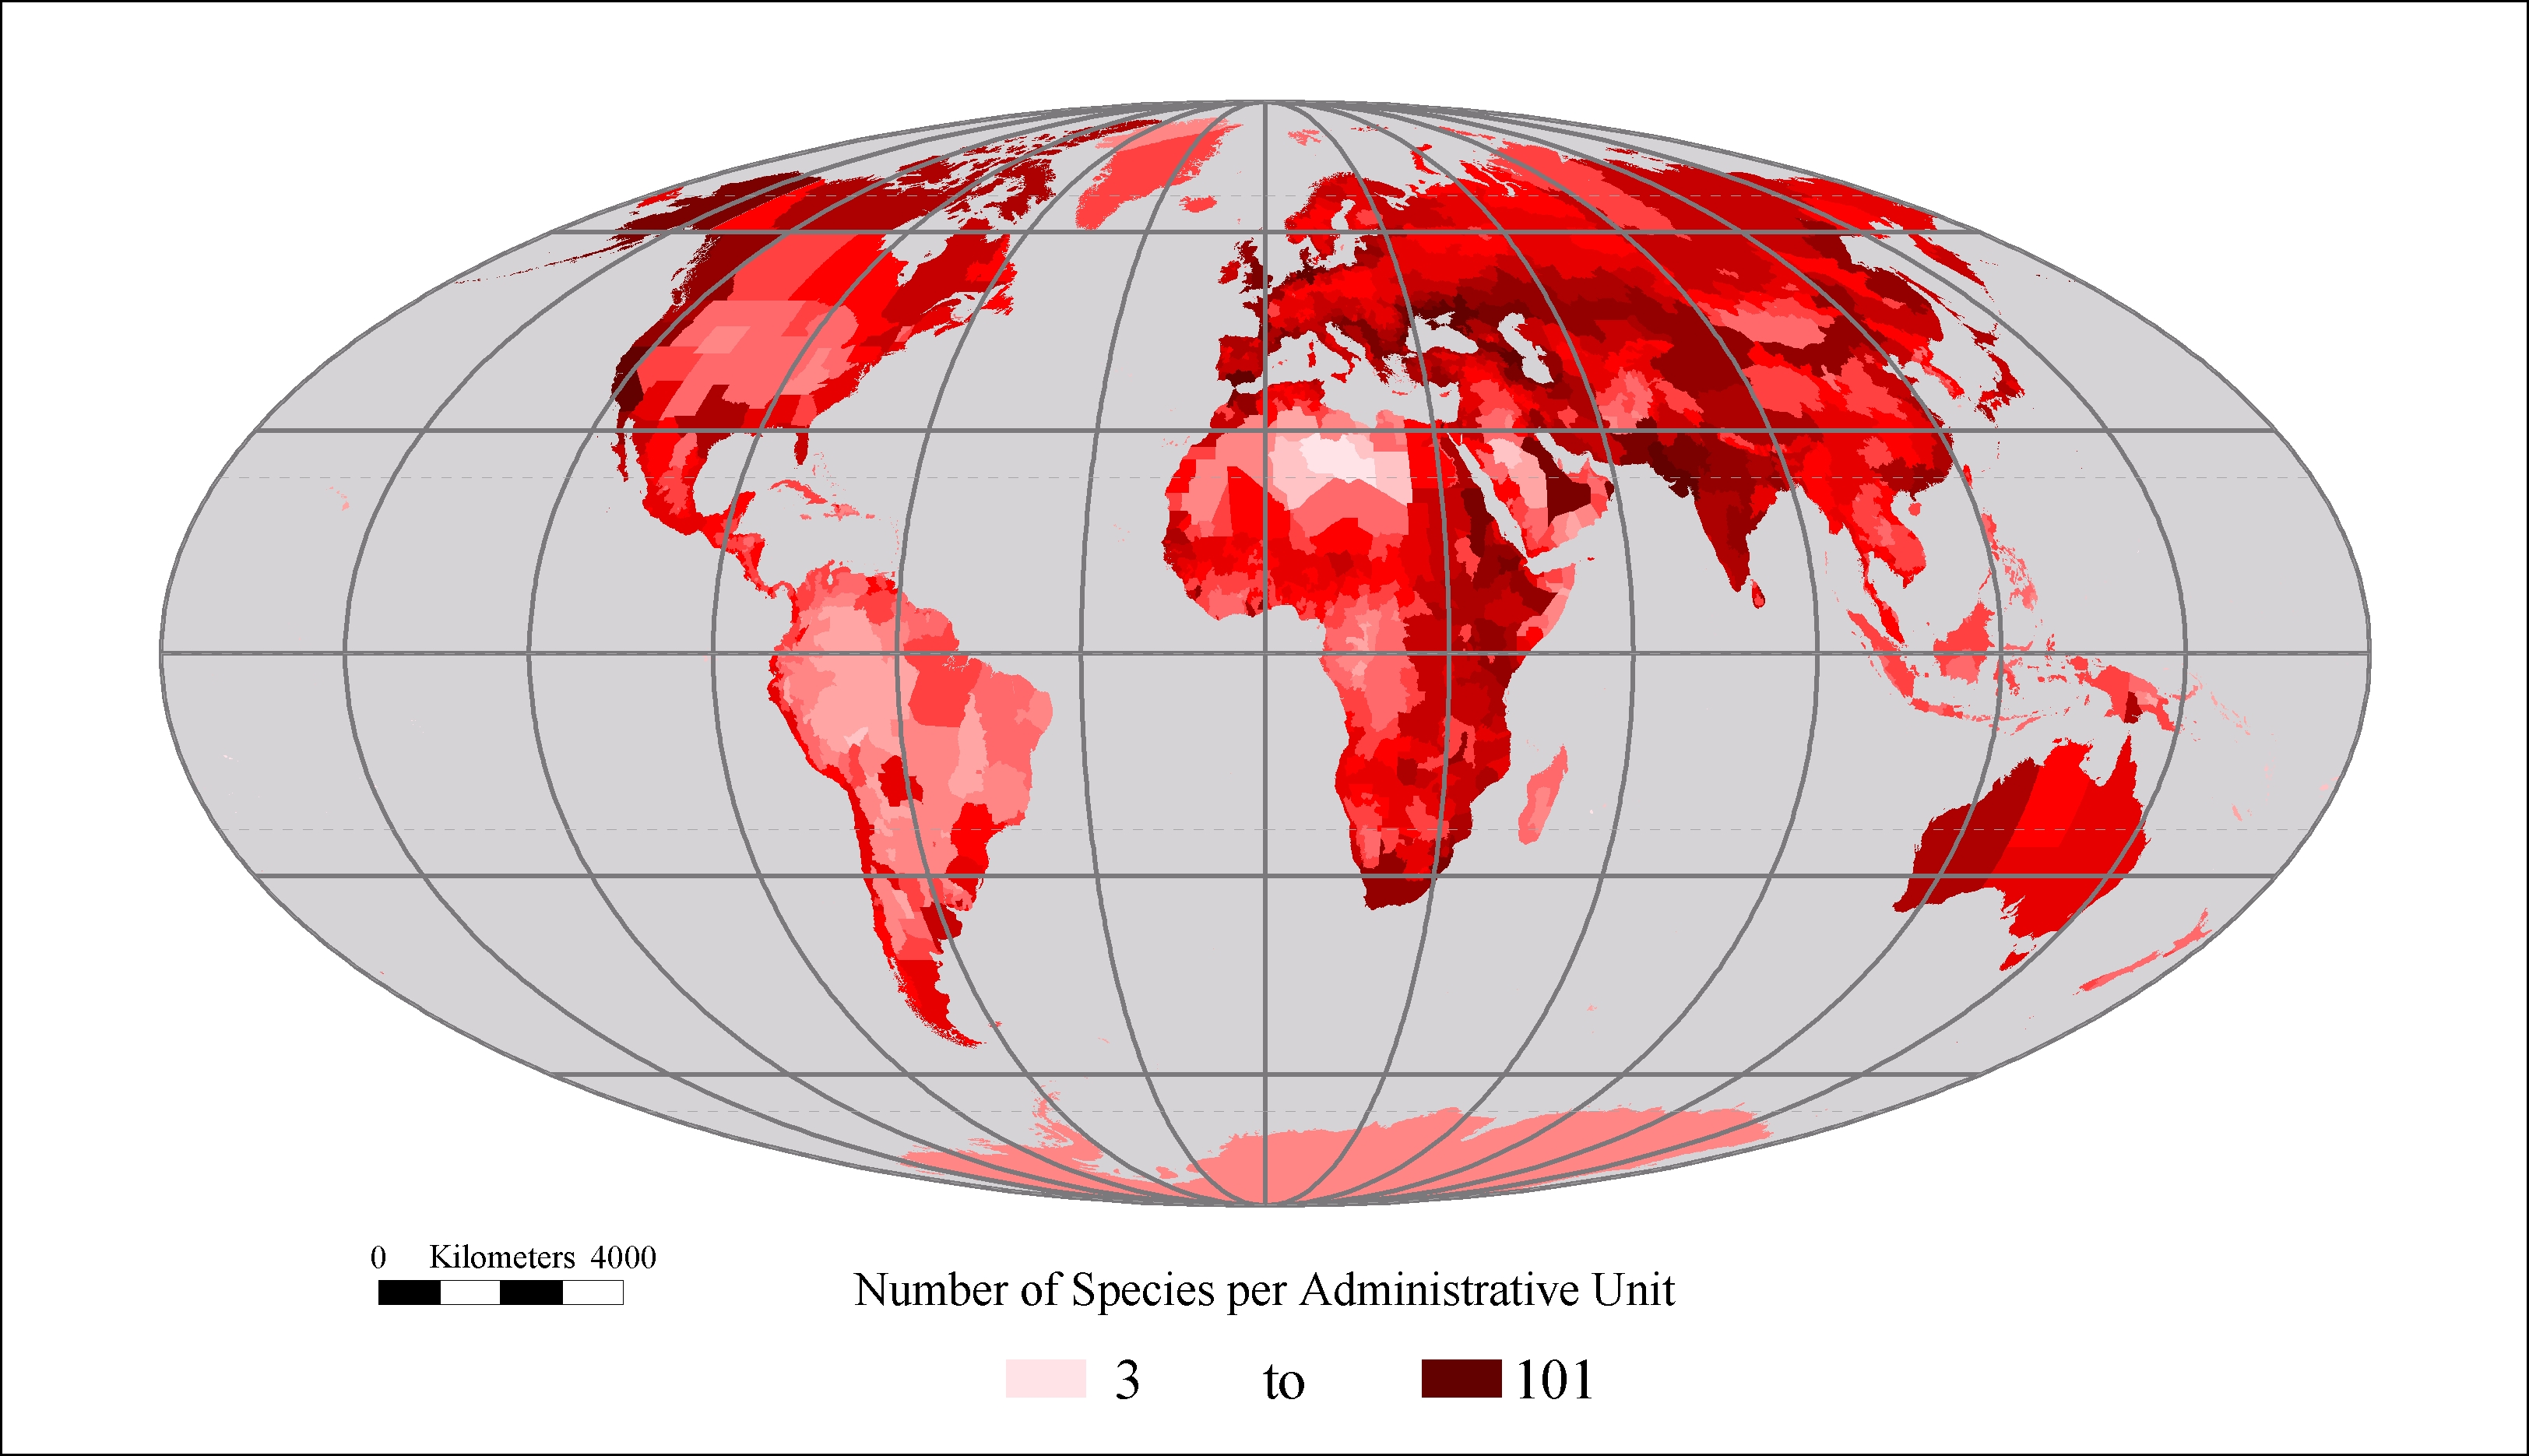 Species per administrative unit